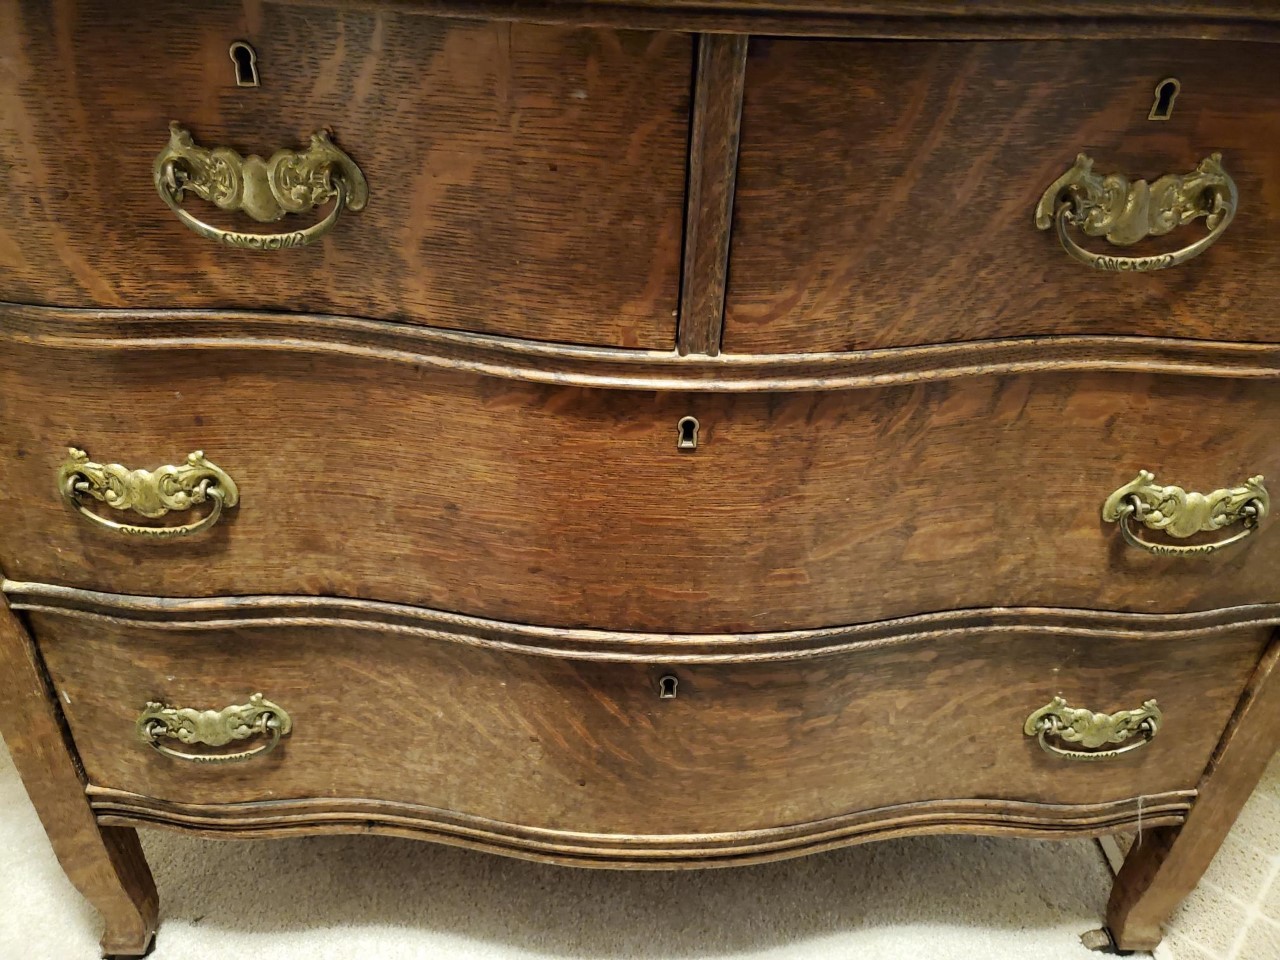 Antique oak dresser found on Craigslist for $100.